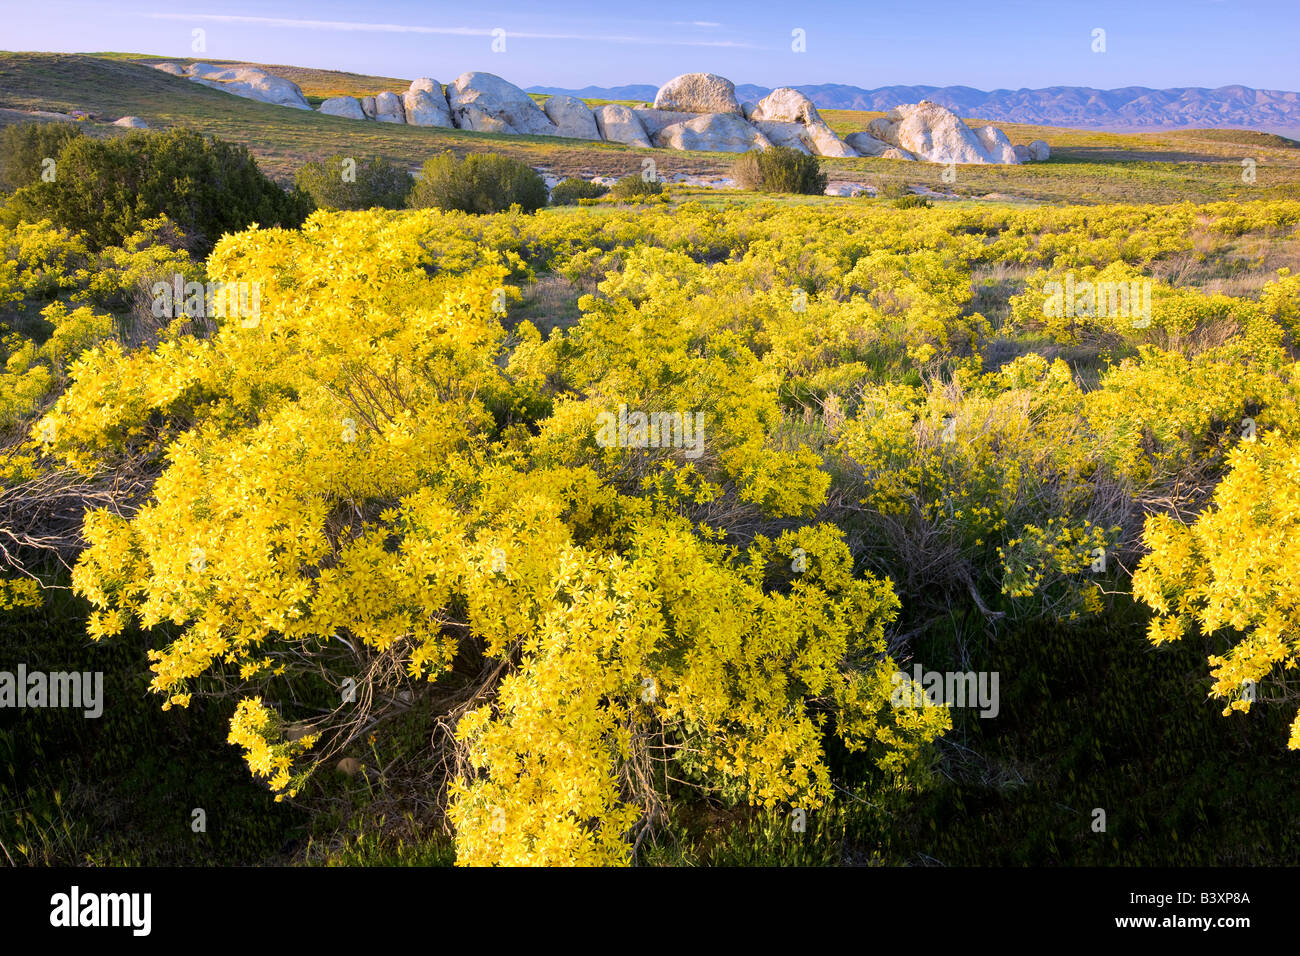 Interior Golden Bush Ericamaenia linearifolia Carrizo Plain California Stock Photo